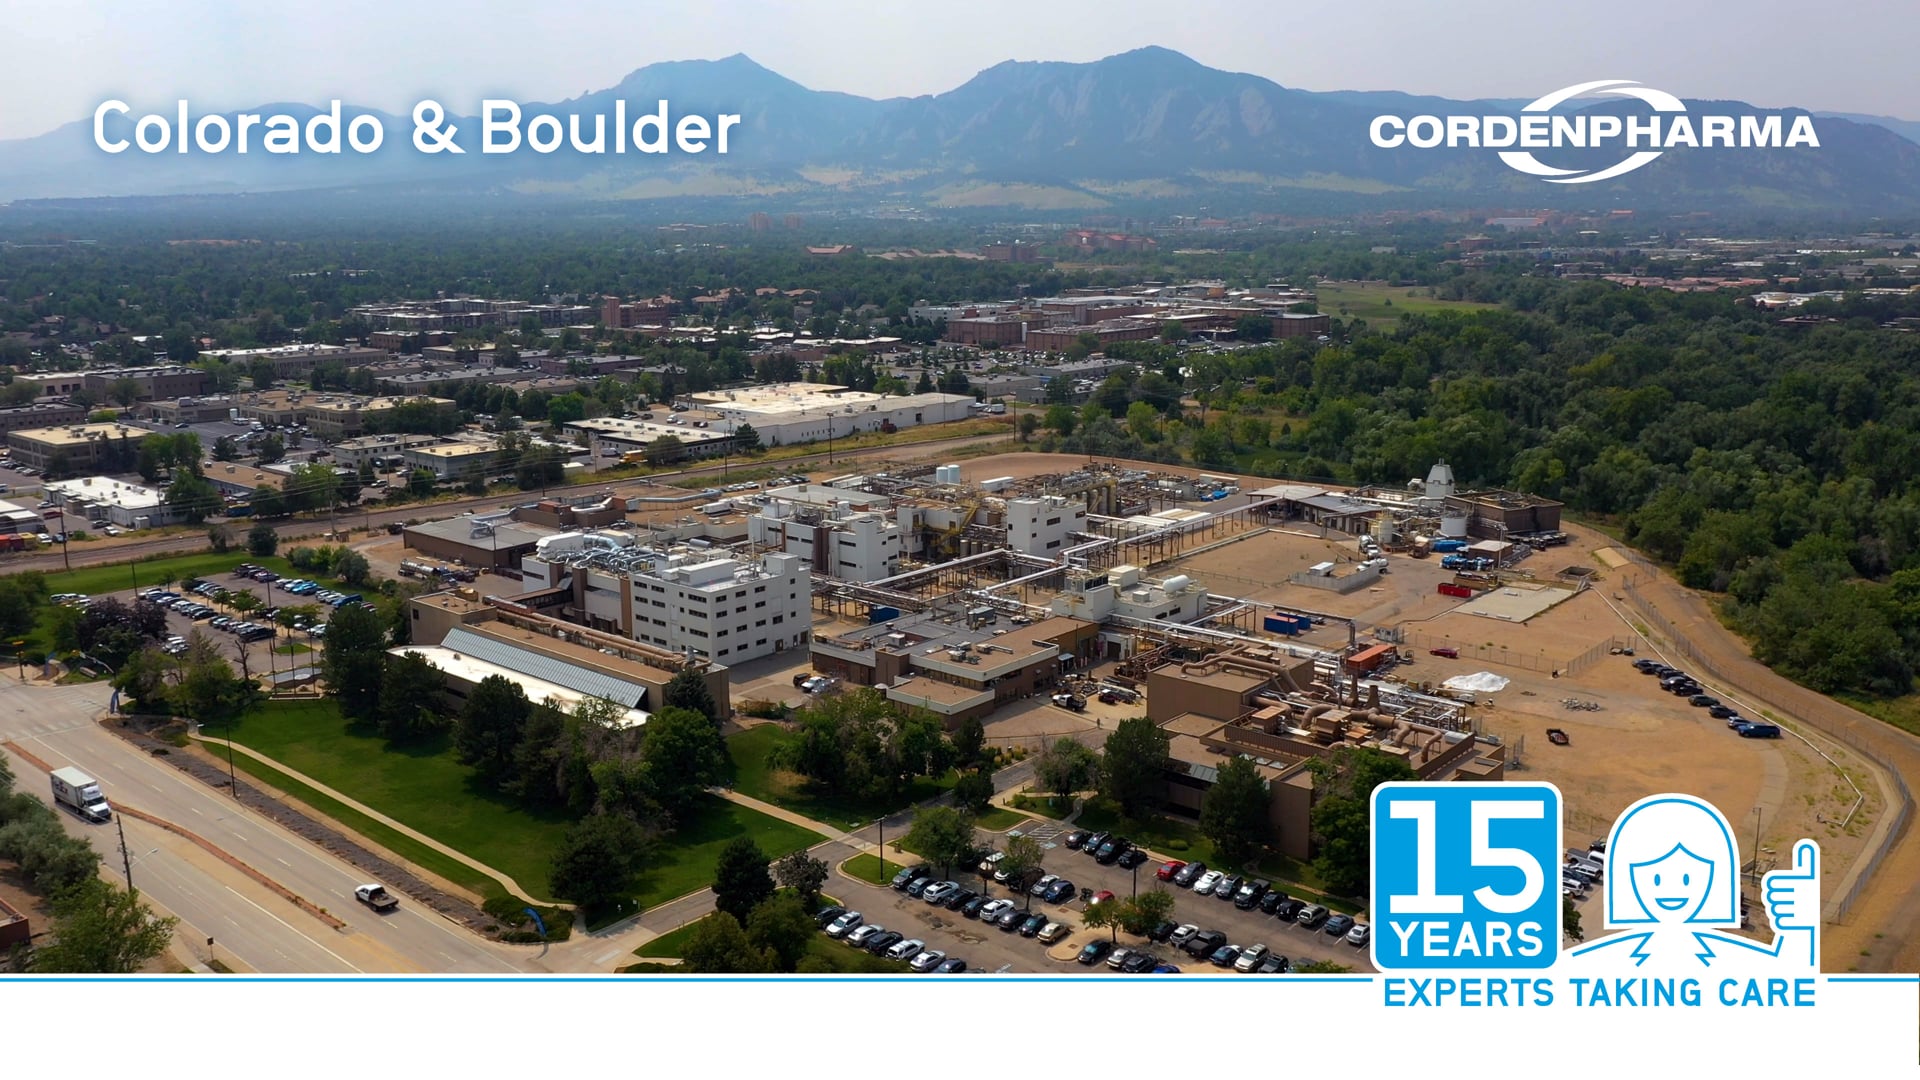 CordenPharma 15 Year Anniversary - CordenPharma Colorado & Boulder